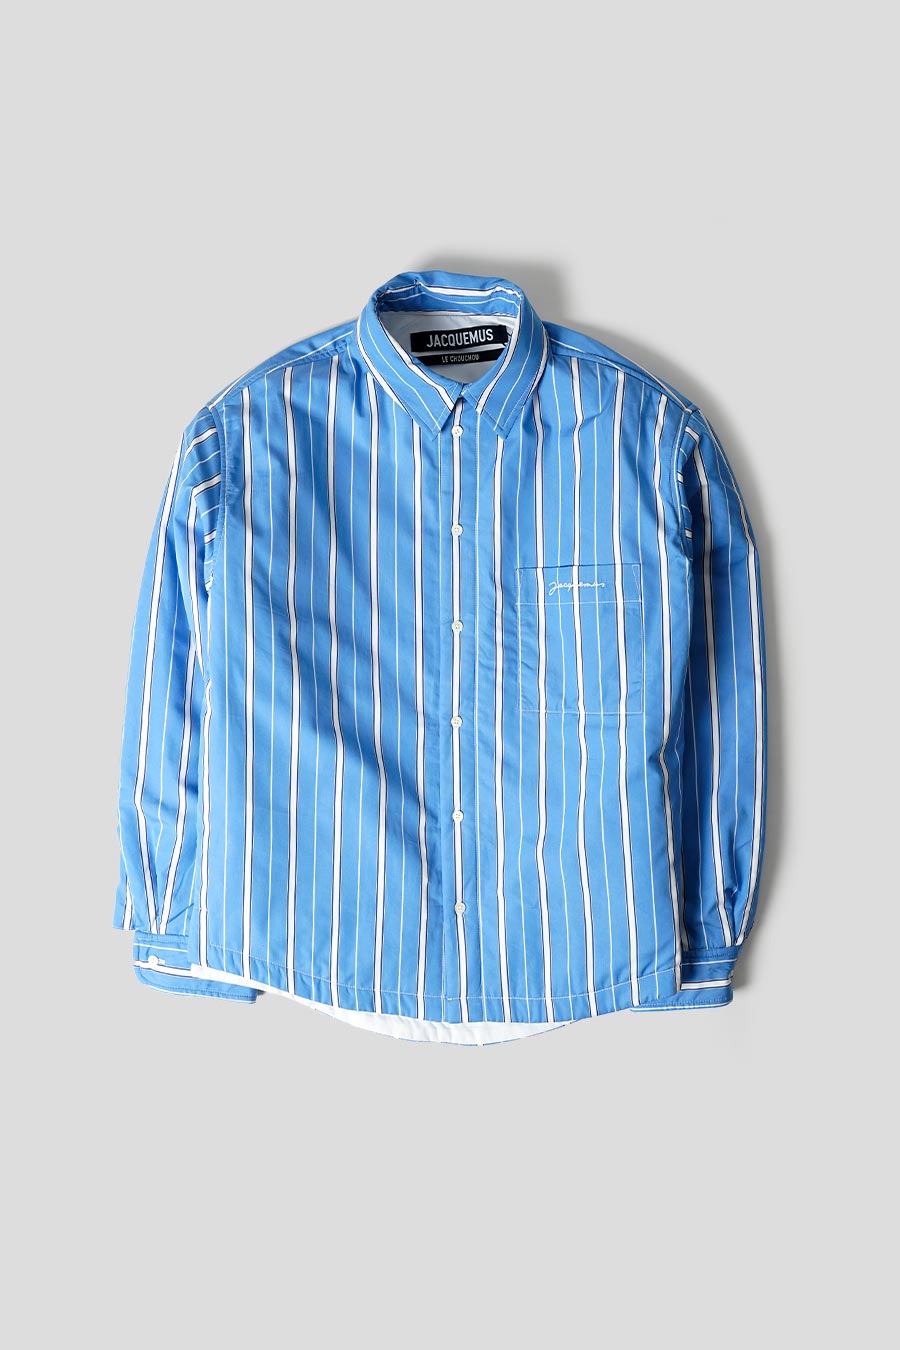 Jacquemus logo-striped shirt - Blue